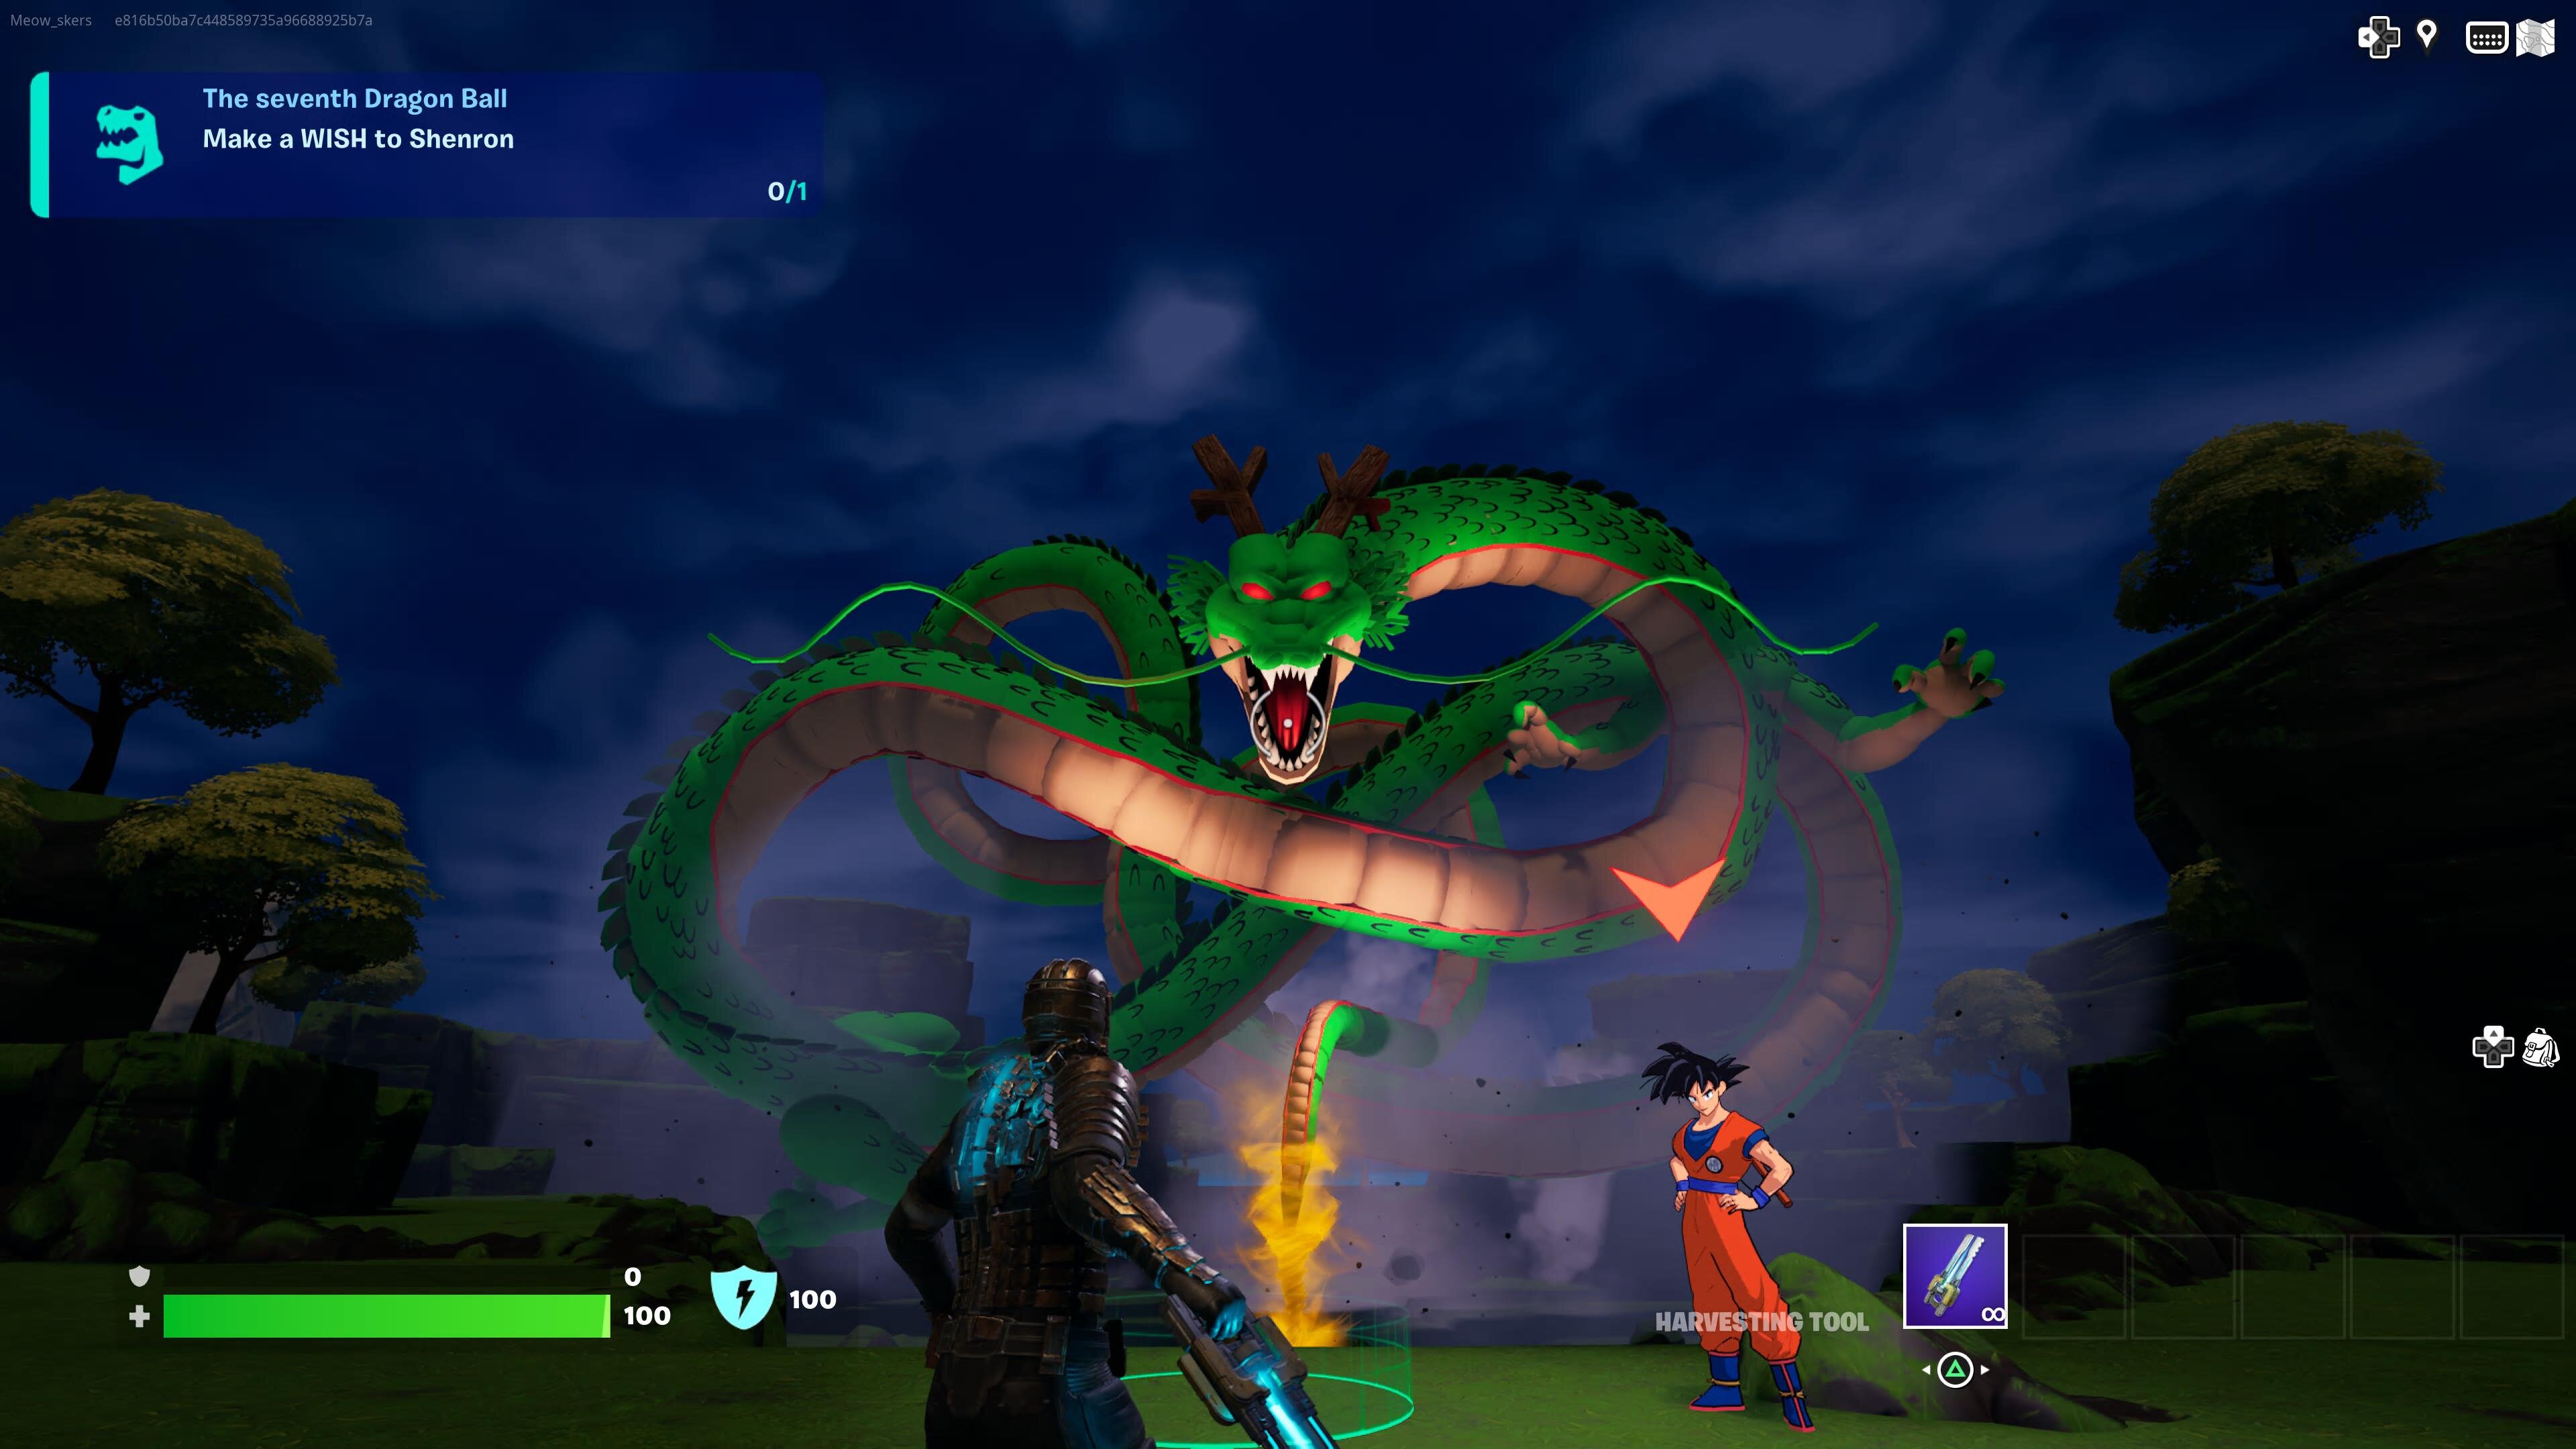 Shenron the dragon in Fortnite.